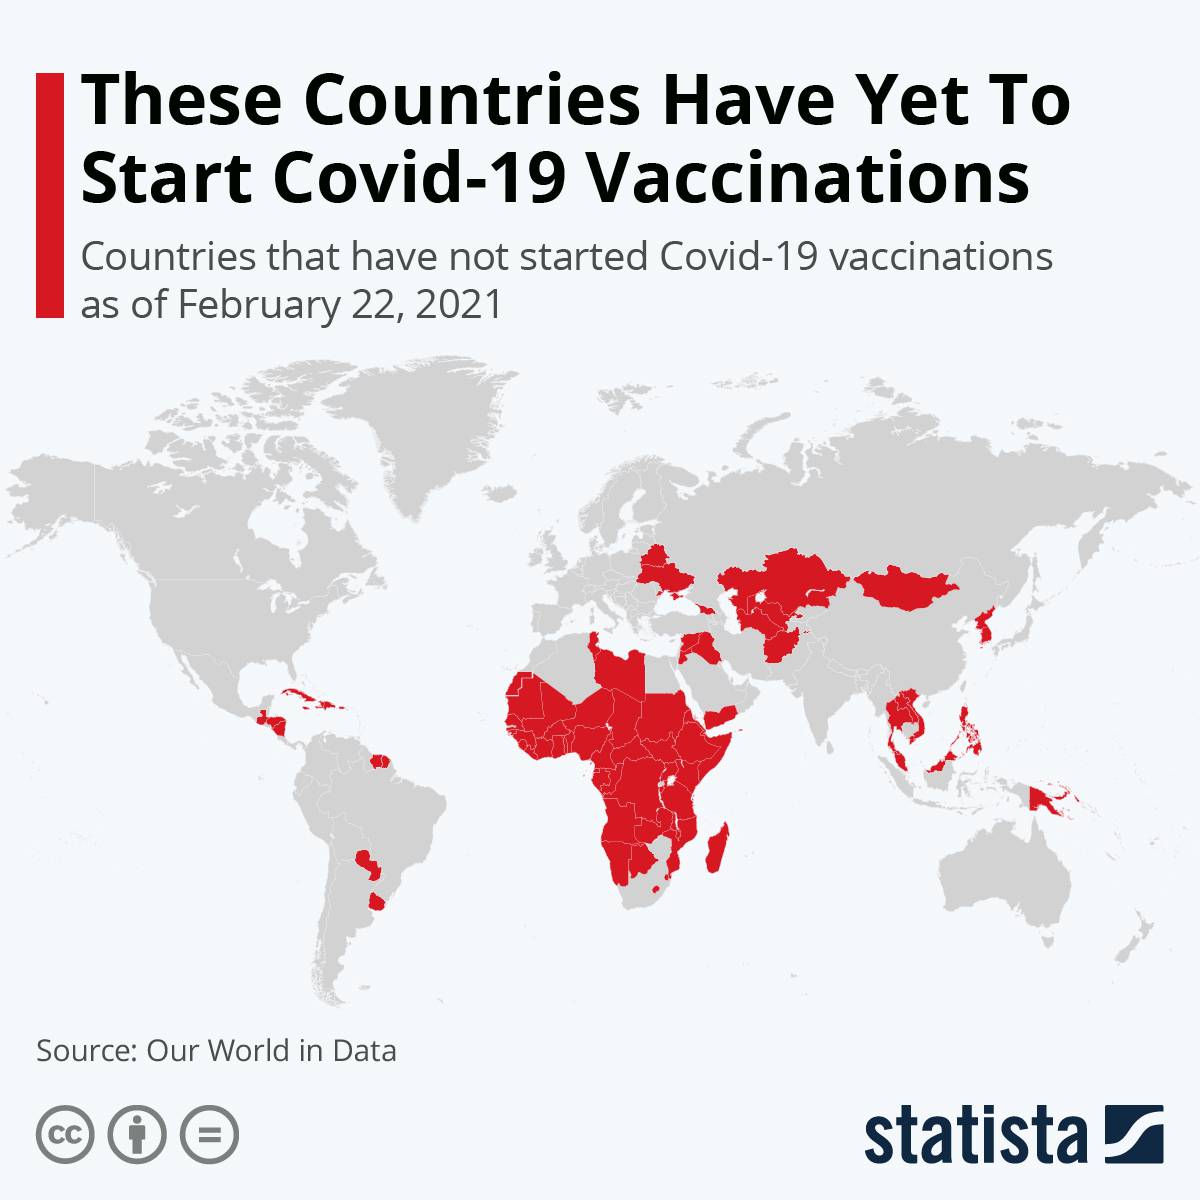 کدام کشورها به تازگی واکسیناسیون کرونا را شروع کردند؟